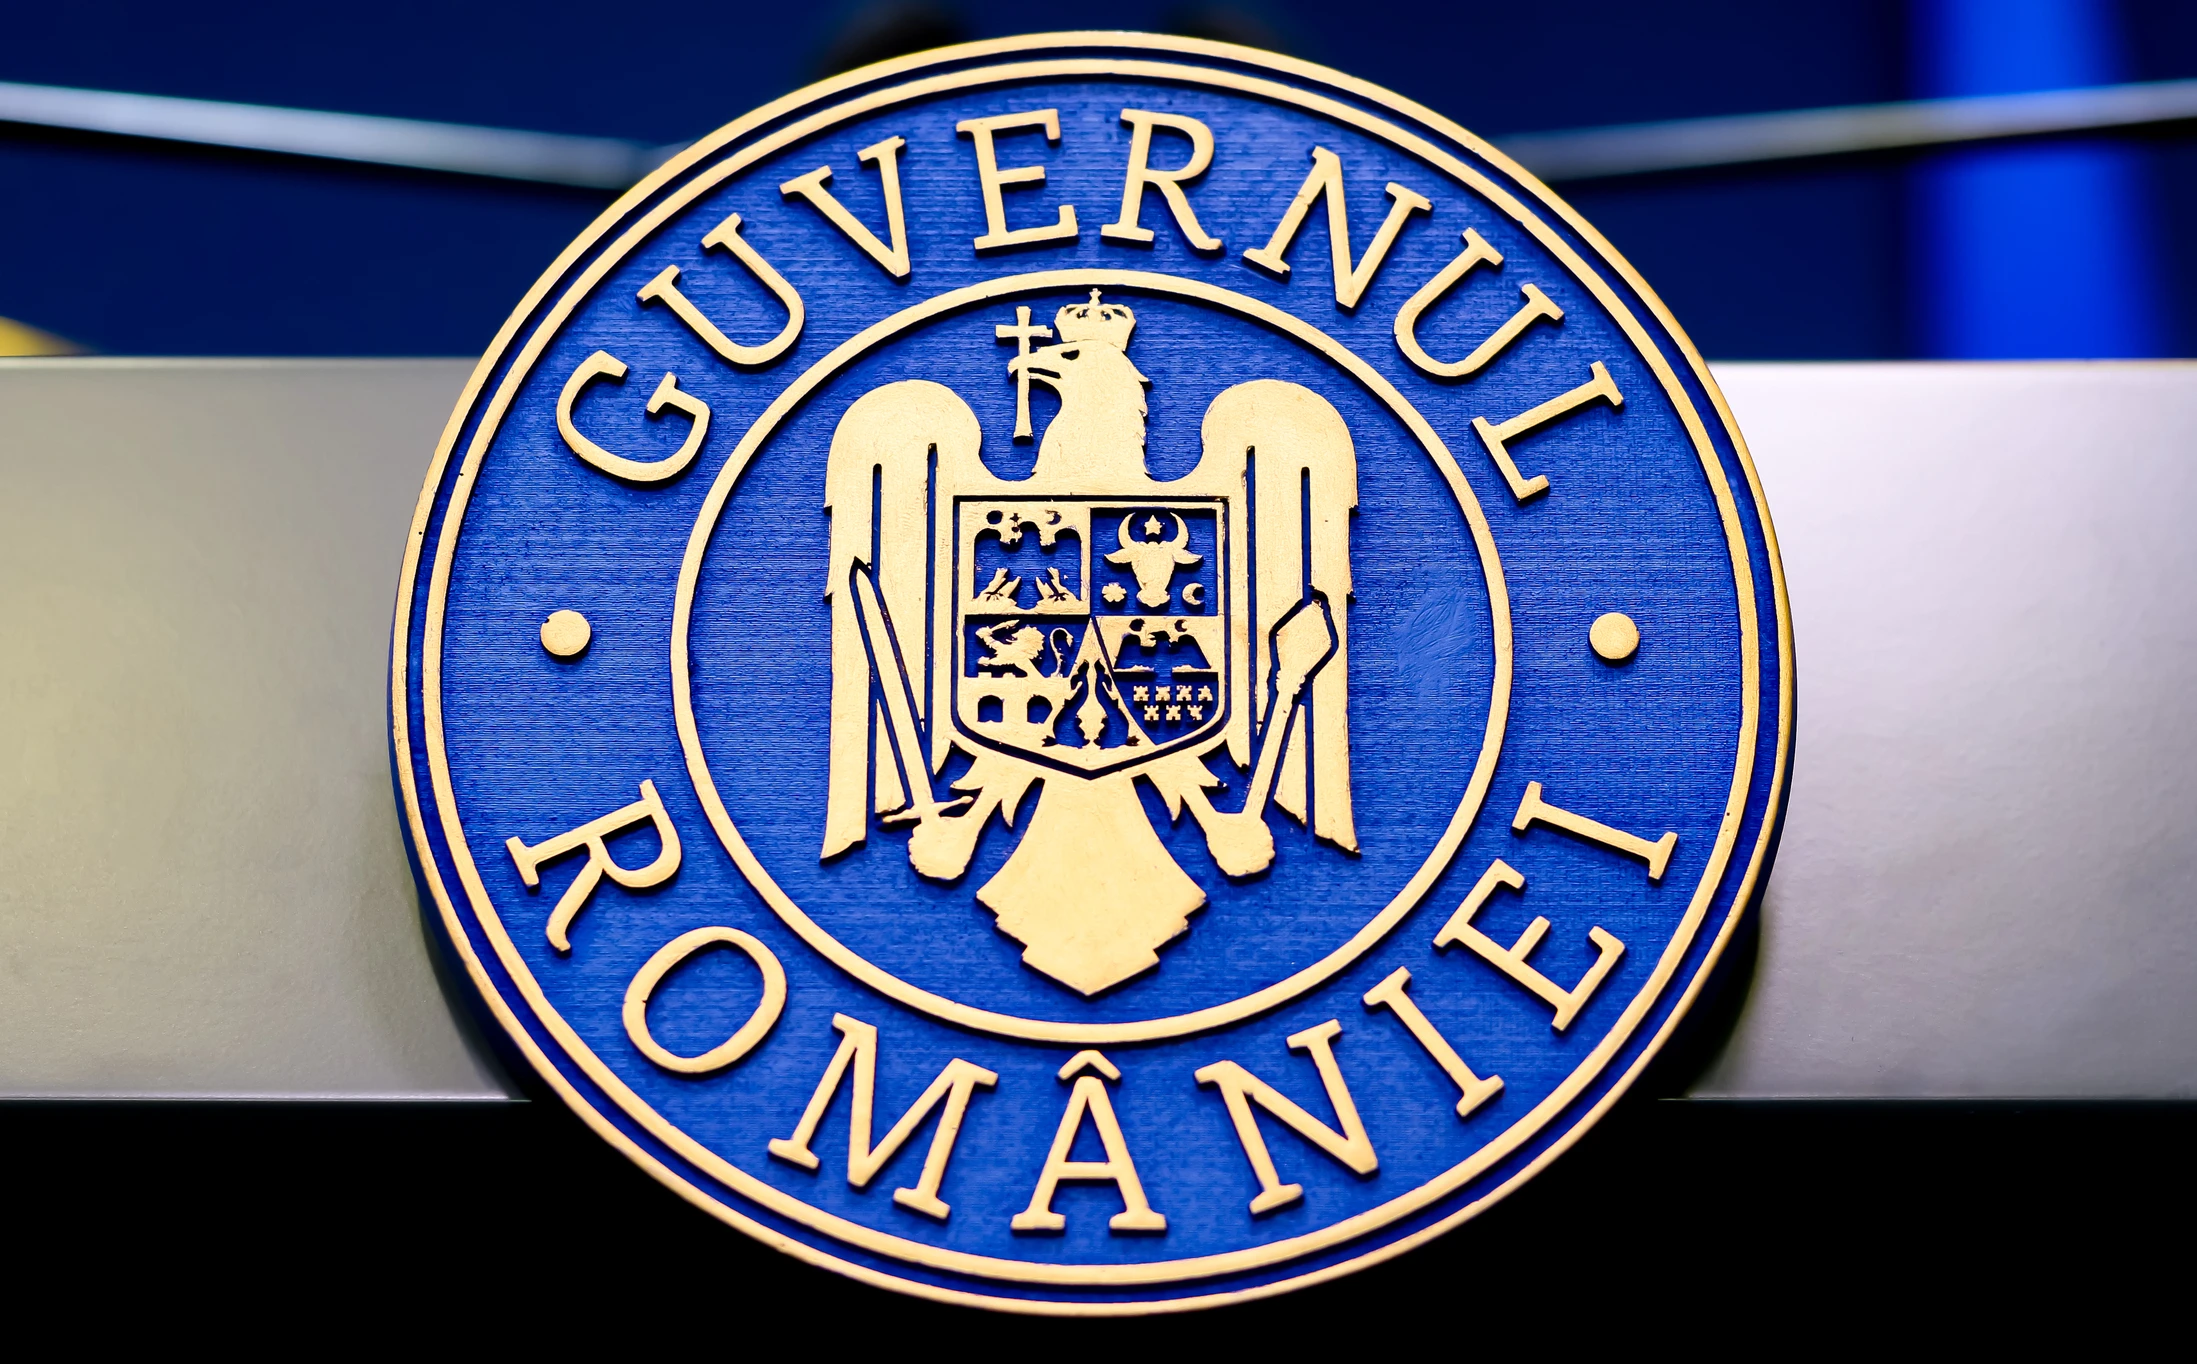 logo Guvernul României